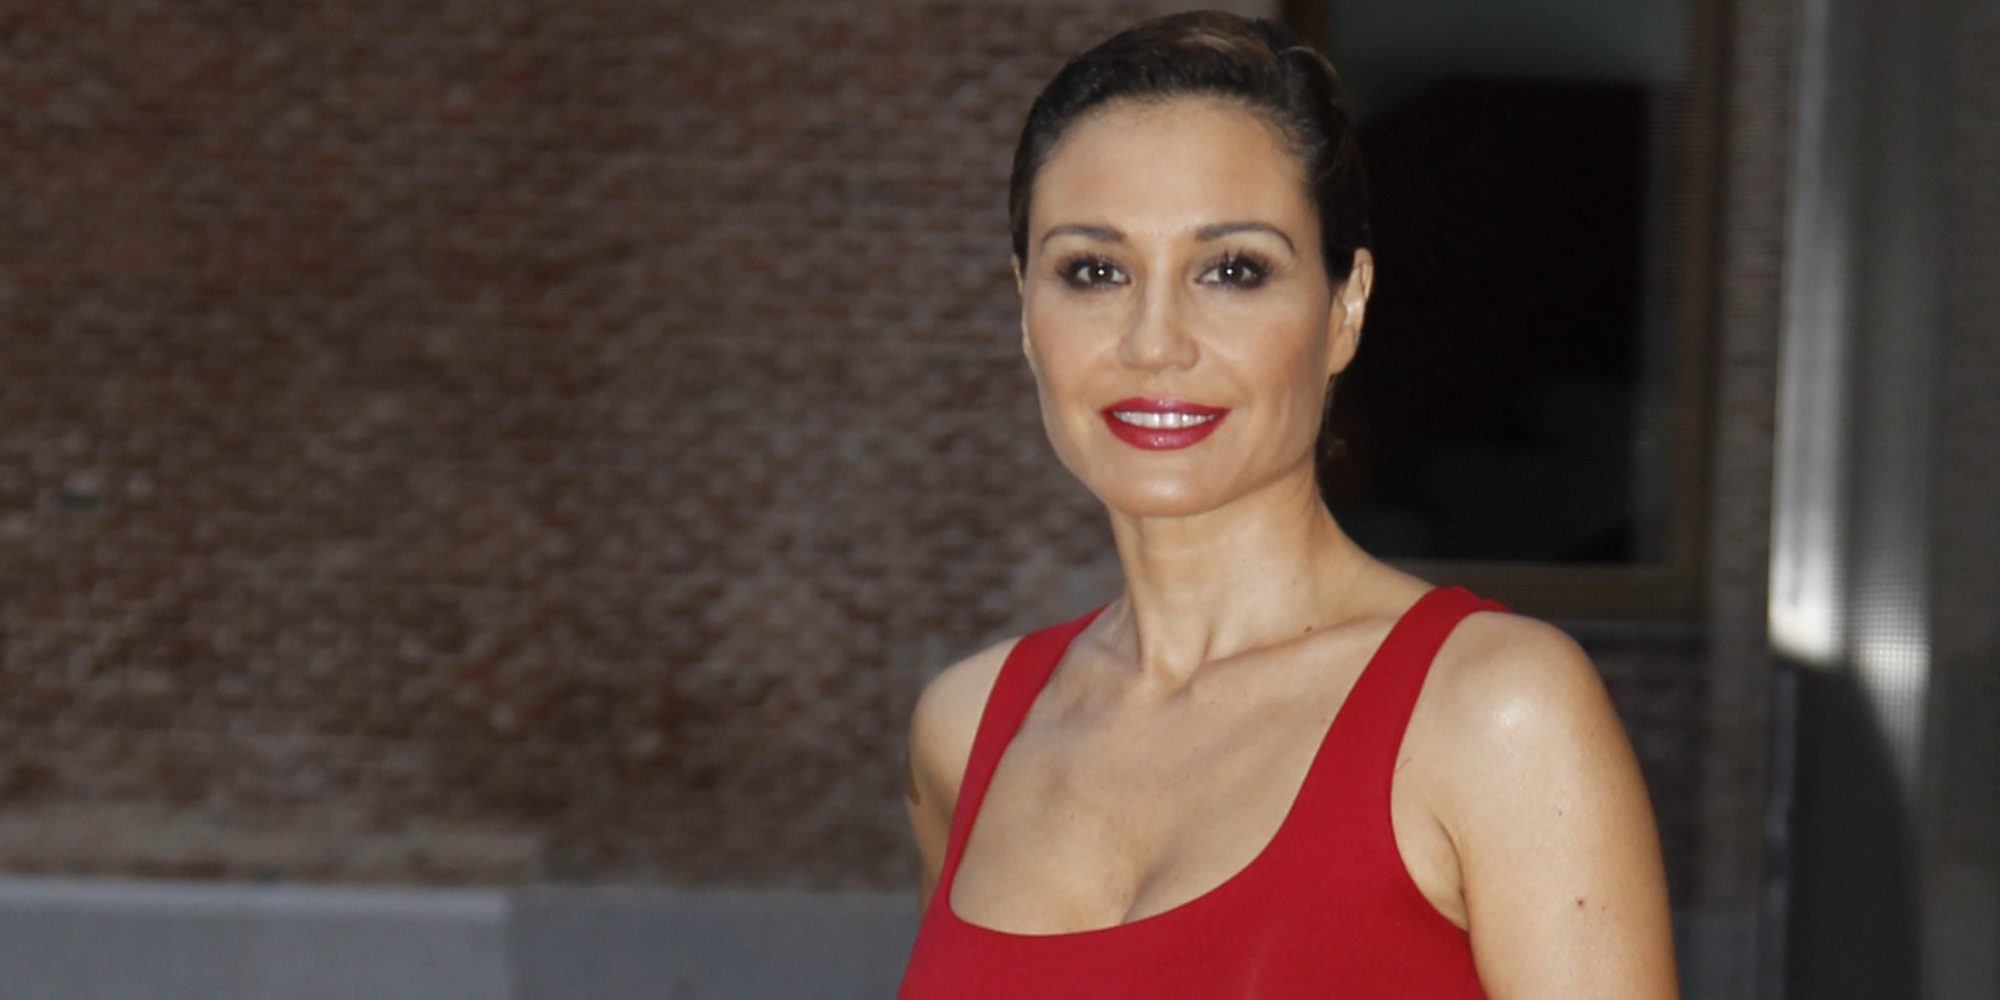 ¿Qué fue de la ex Miss España y presentadora de televisión Juncal Rivero?